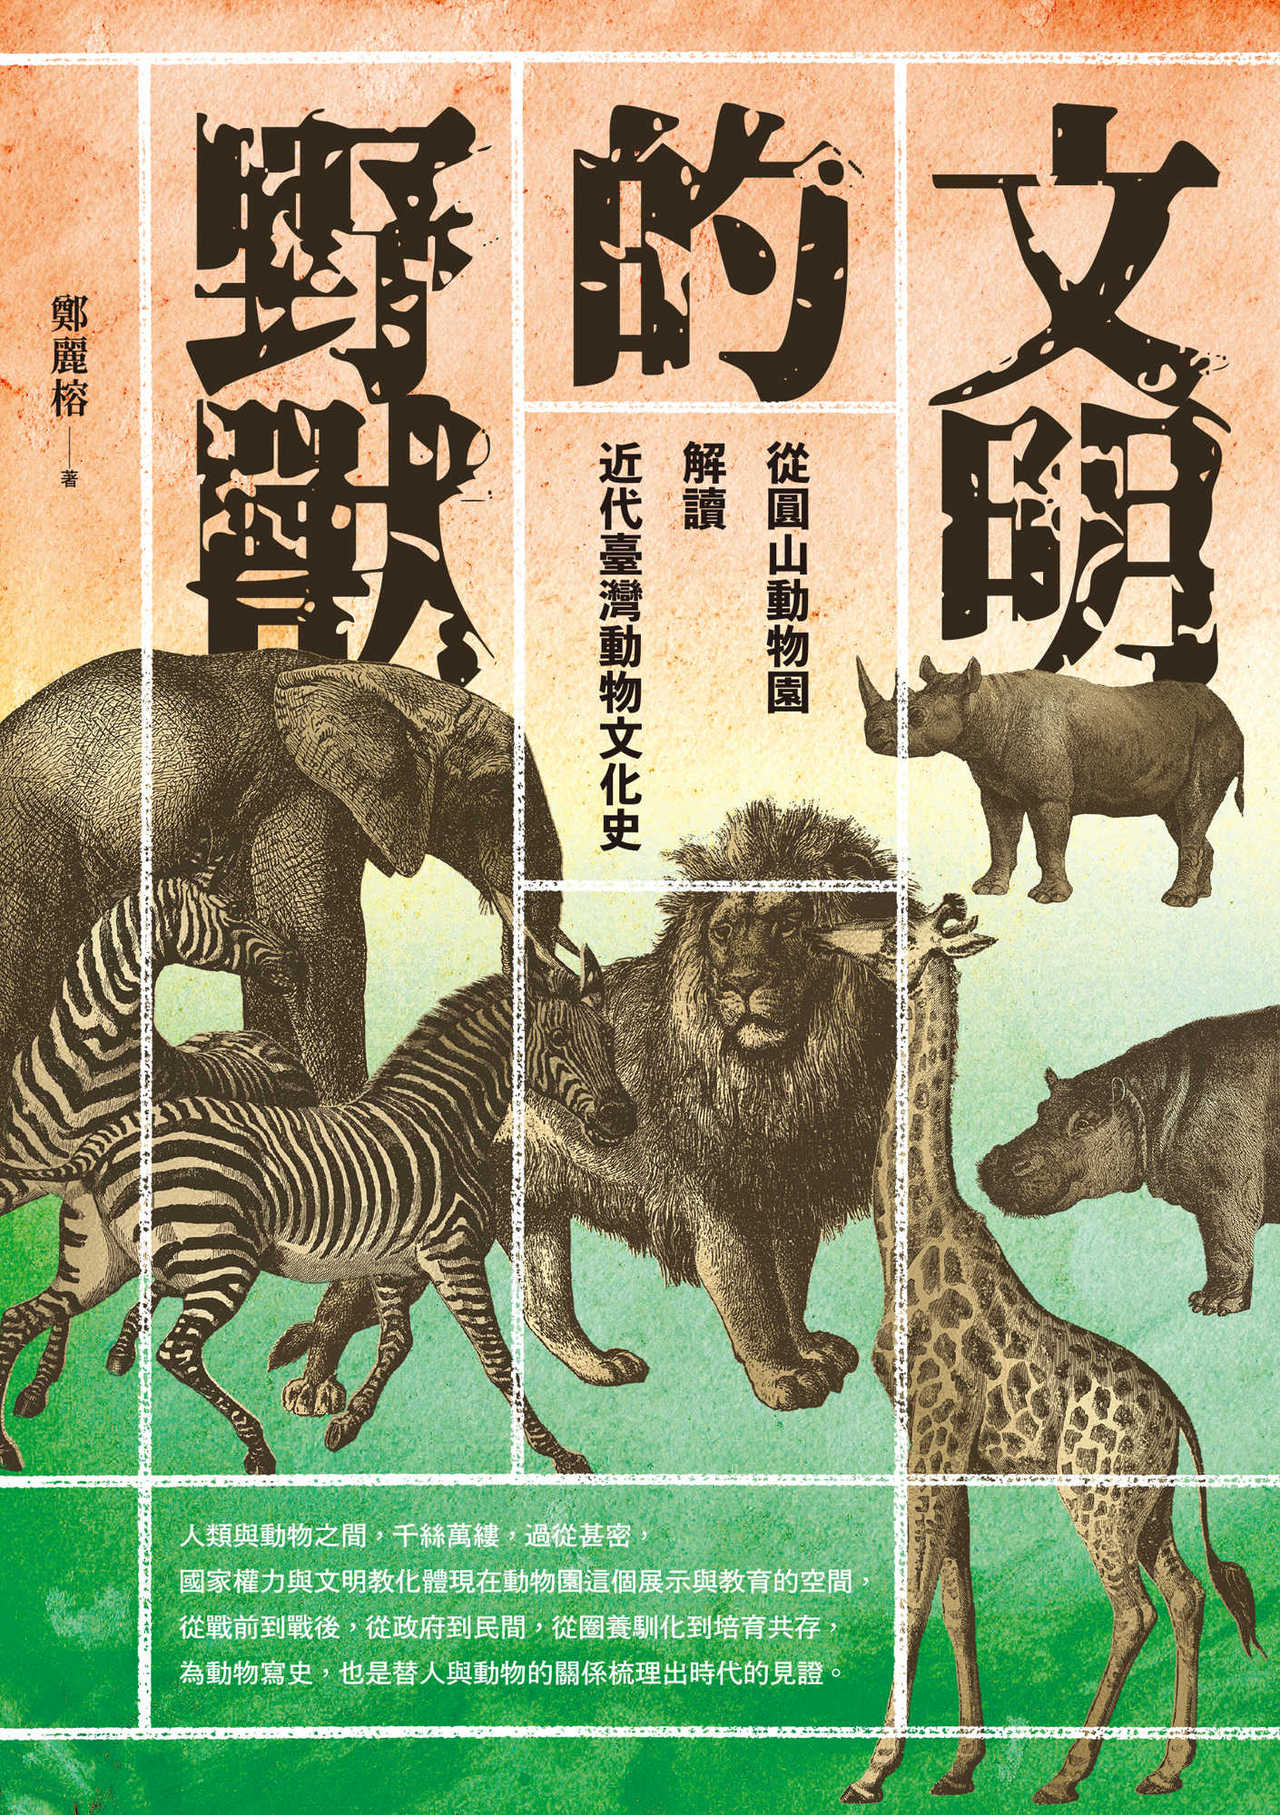 憶1950年代圓山動物園 從戰時 猛獸處分 瞭解臺灣動物史 閱讀風向球 閱讀 聯合新聞網